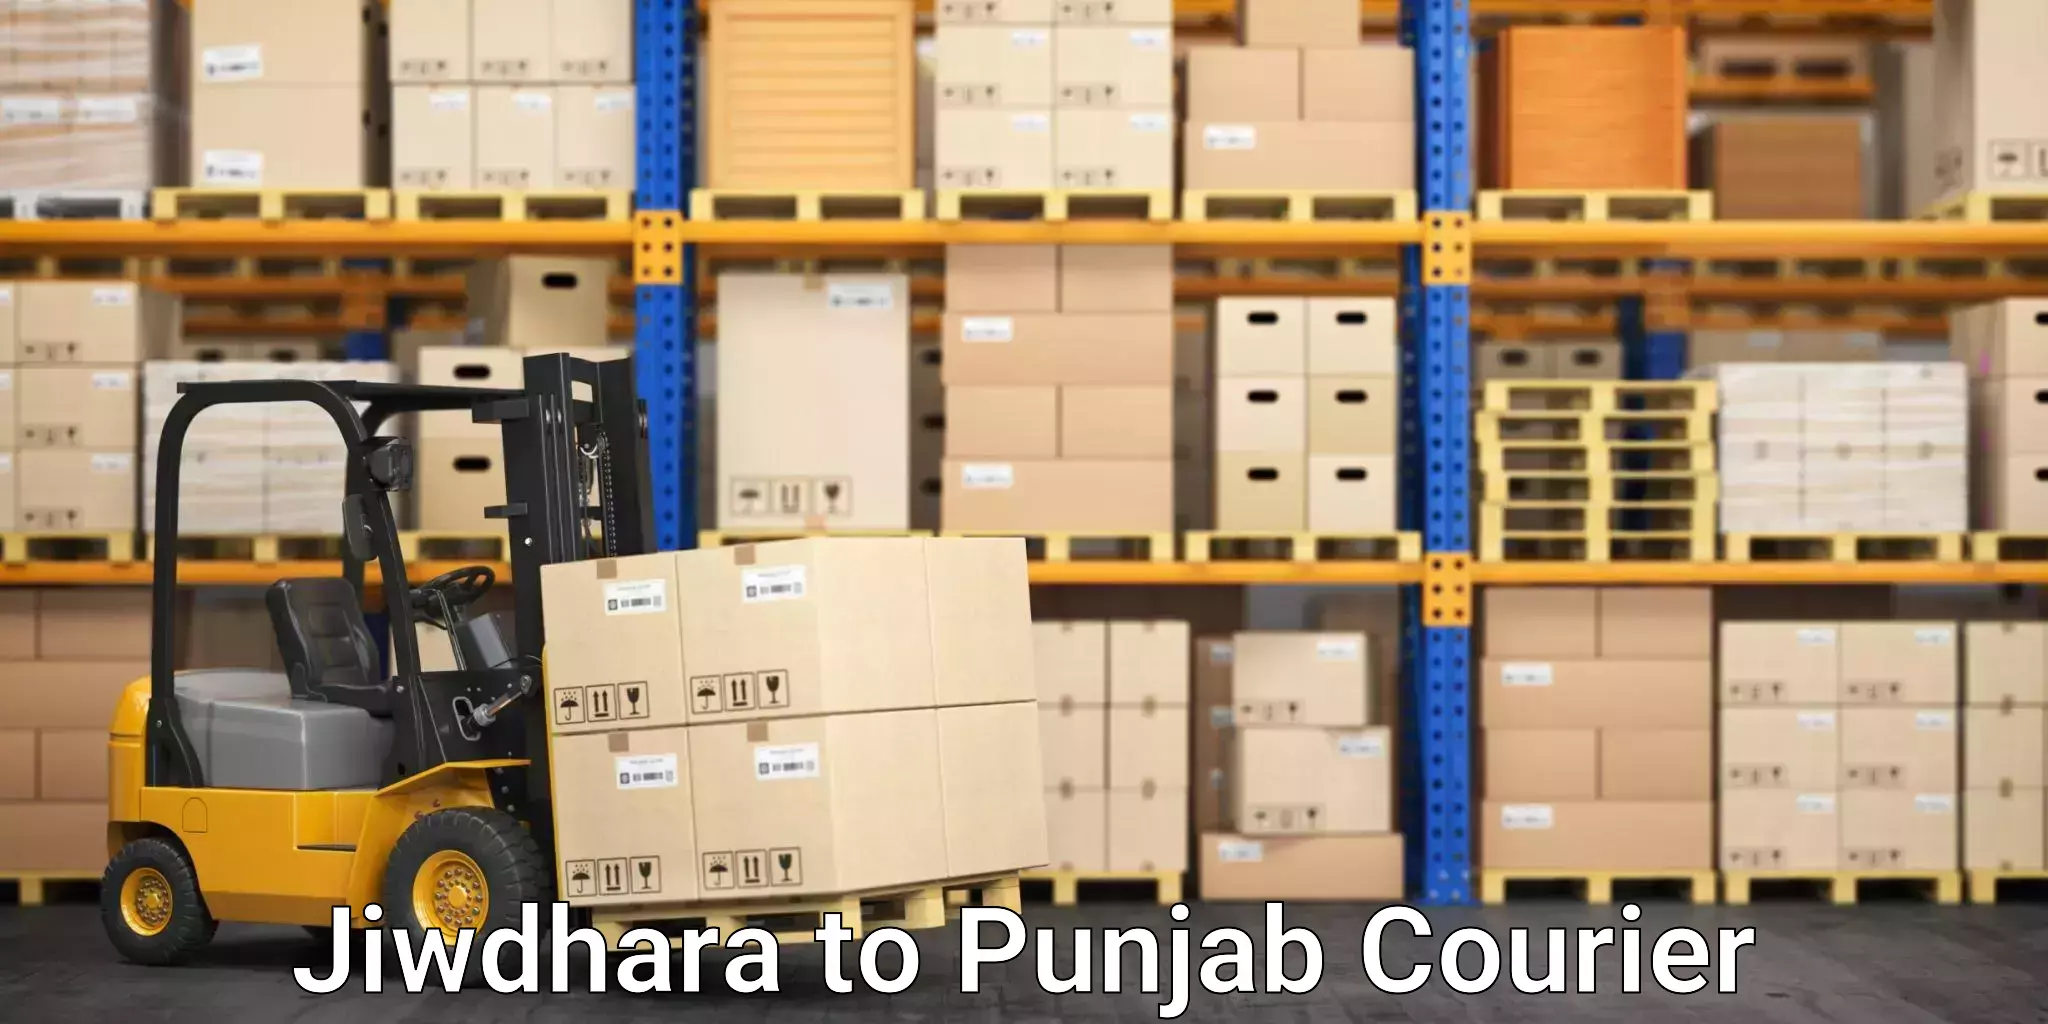 Safe moving services Jiwdhara to Punjab